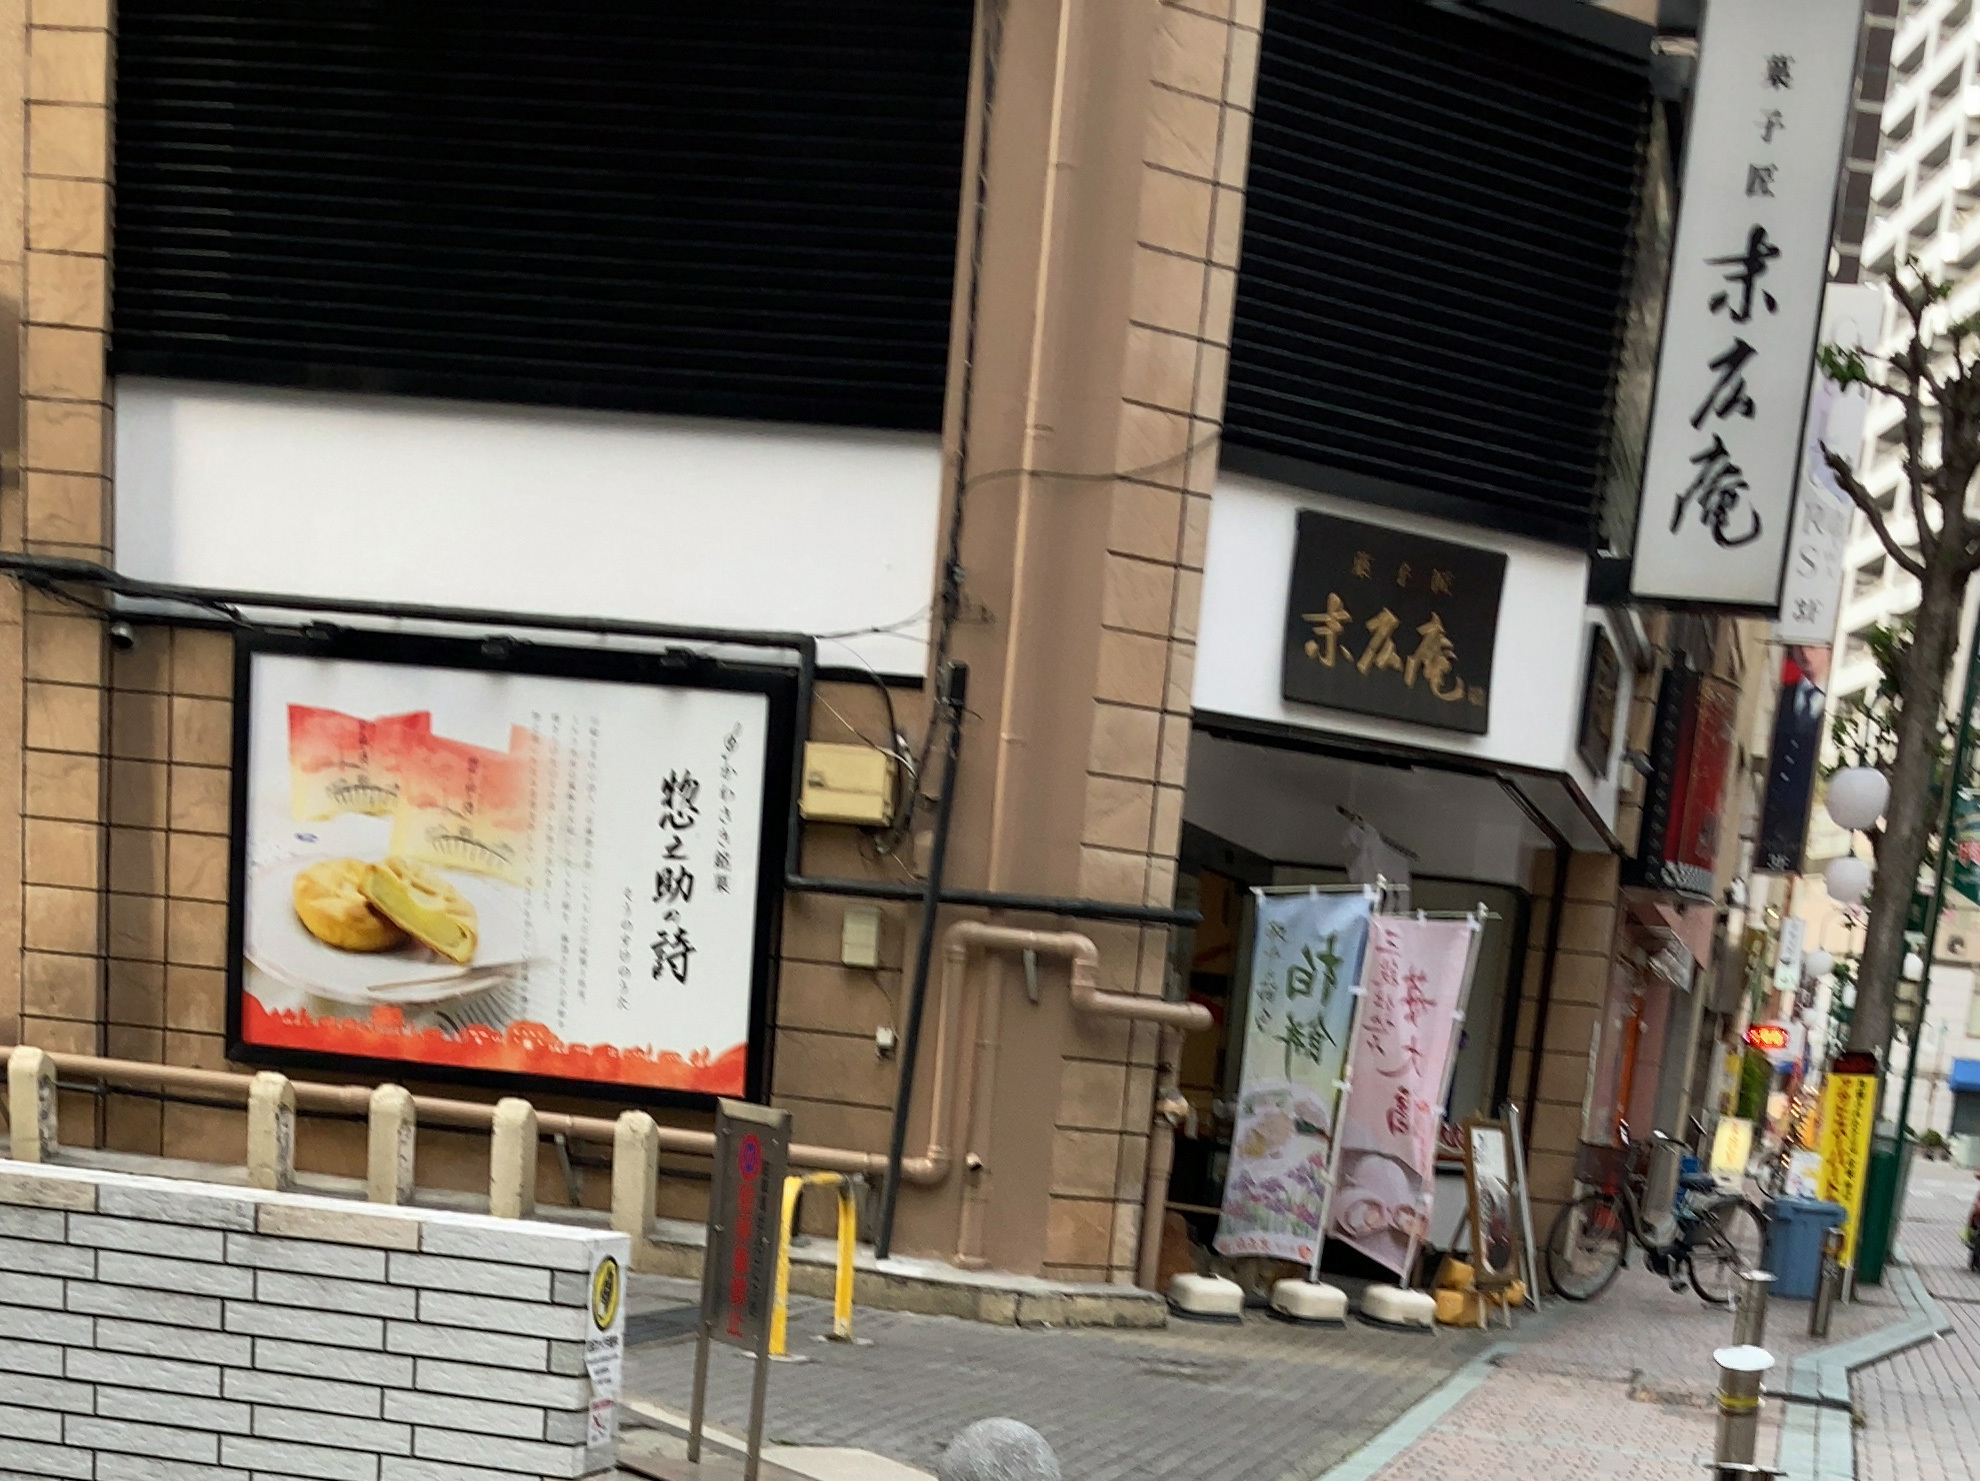 店の外観です。川崎で創業した歴史ある和菓子屋さんです